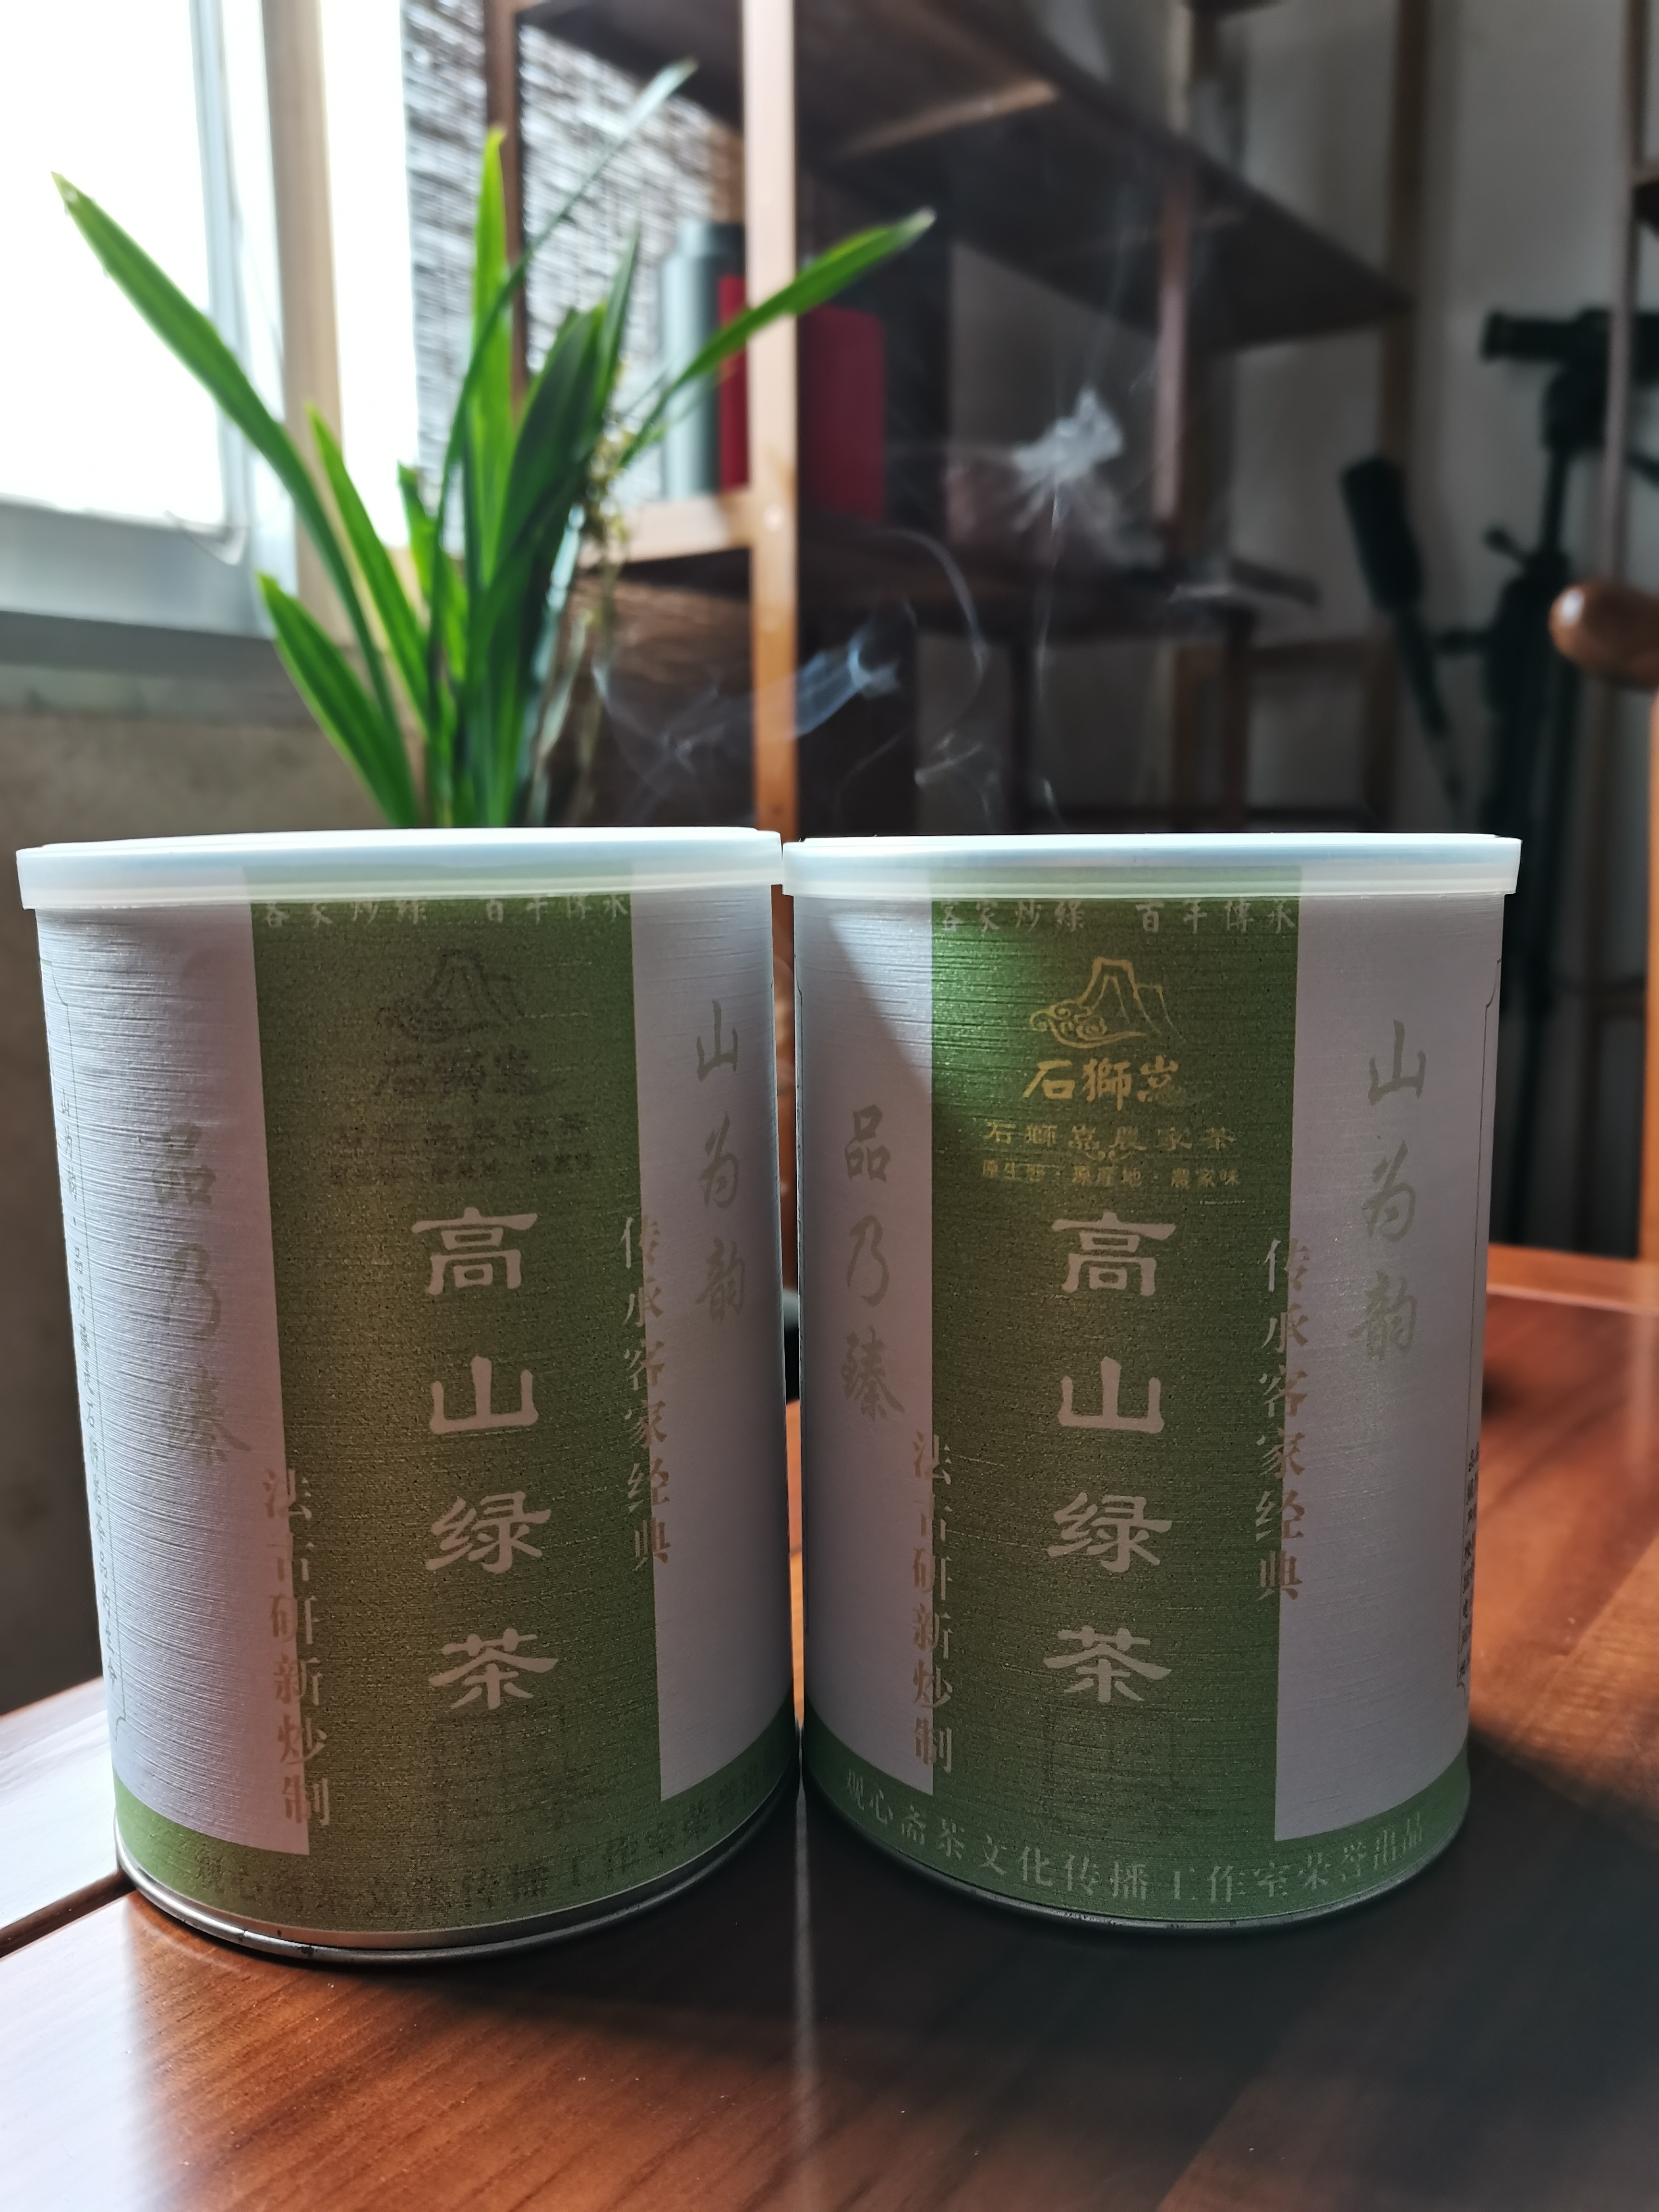 观心斋茶叶产品包装设计及标签应用方案